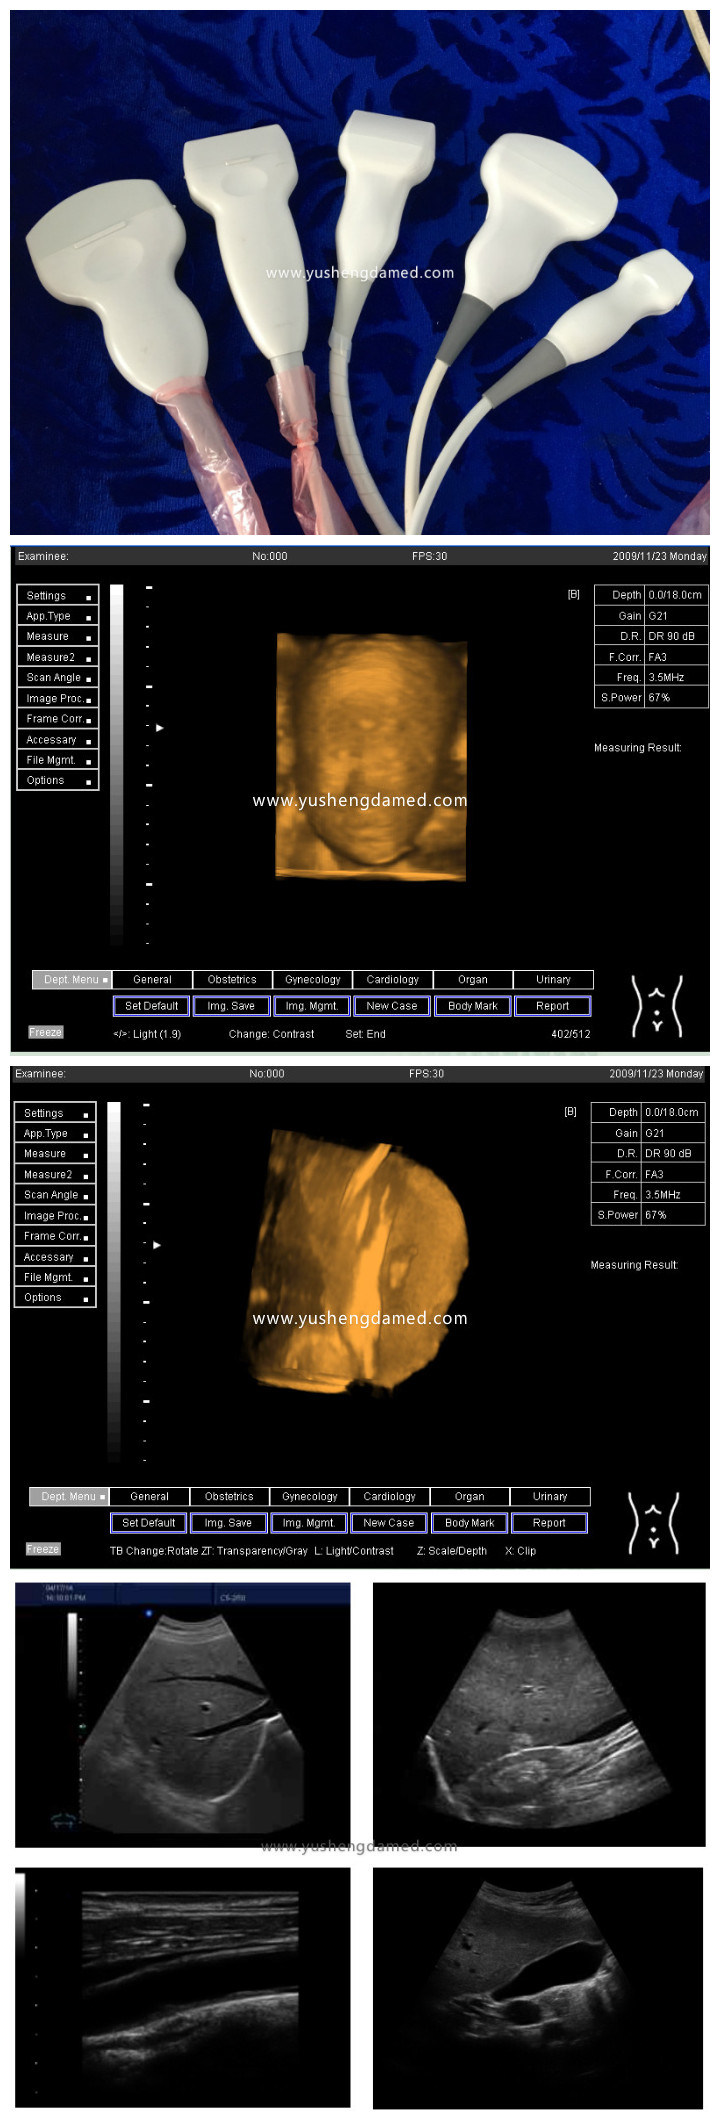 Ce Approved PC Based Medical System Digital Portable Ultrasound Scanner